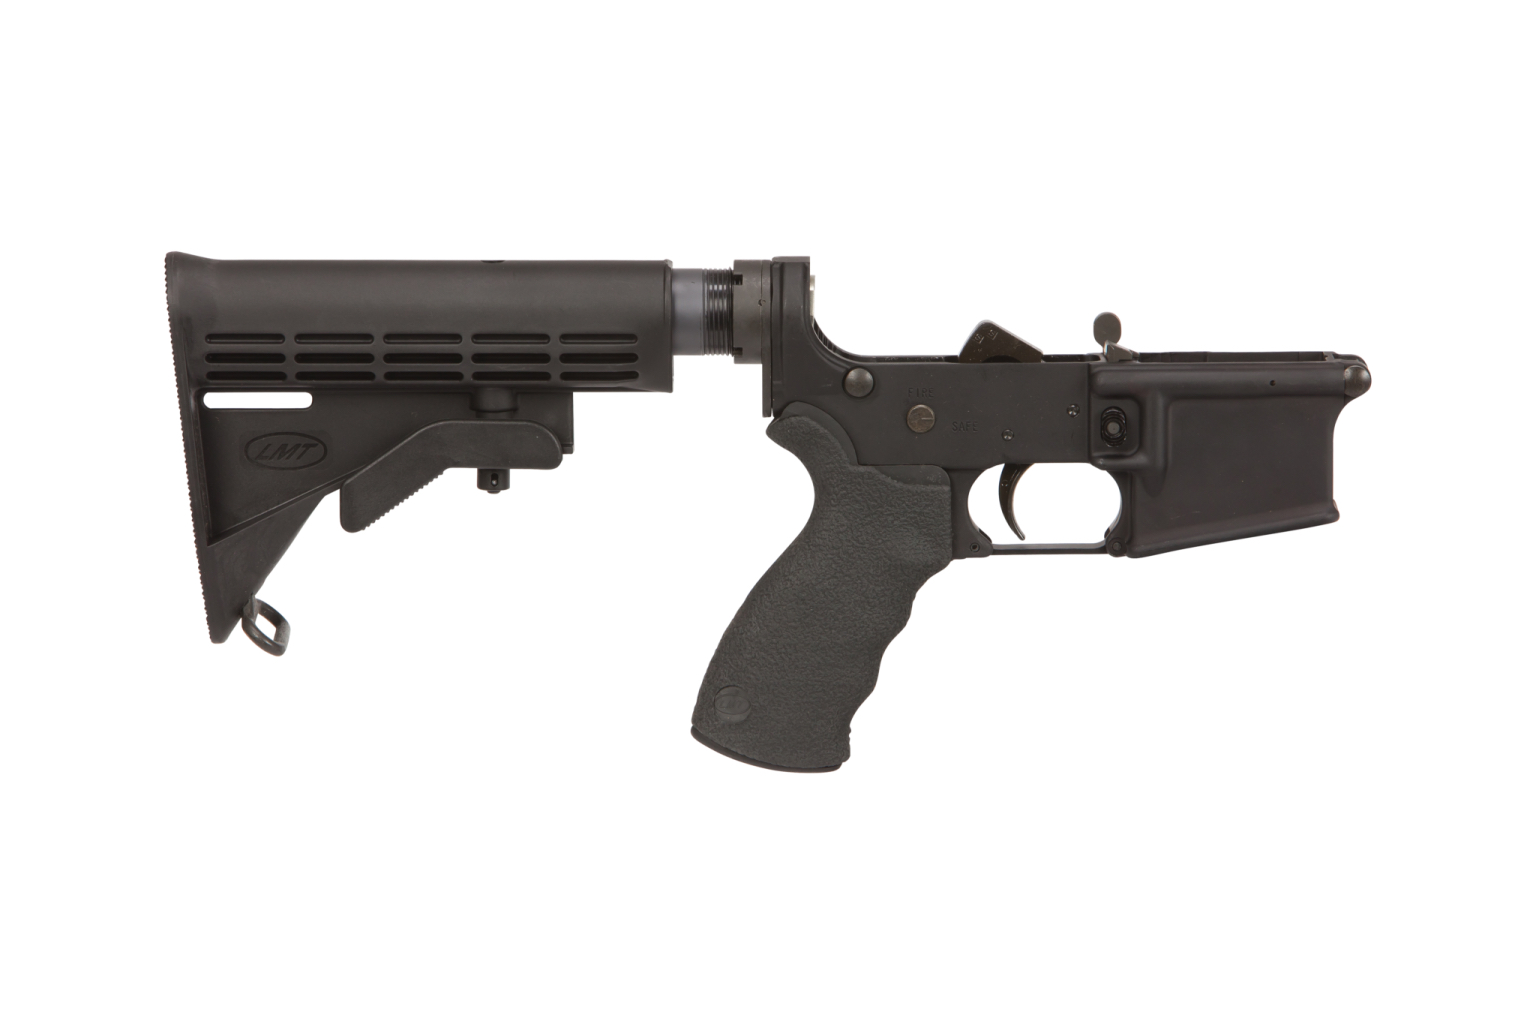 LMT Defender Complete AR-15 Lower Receiver